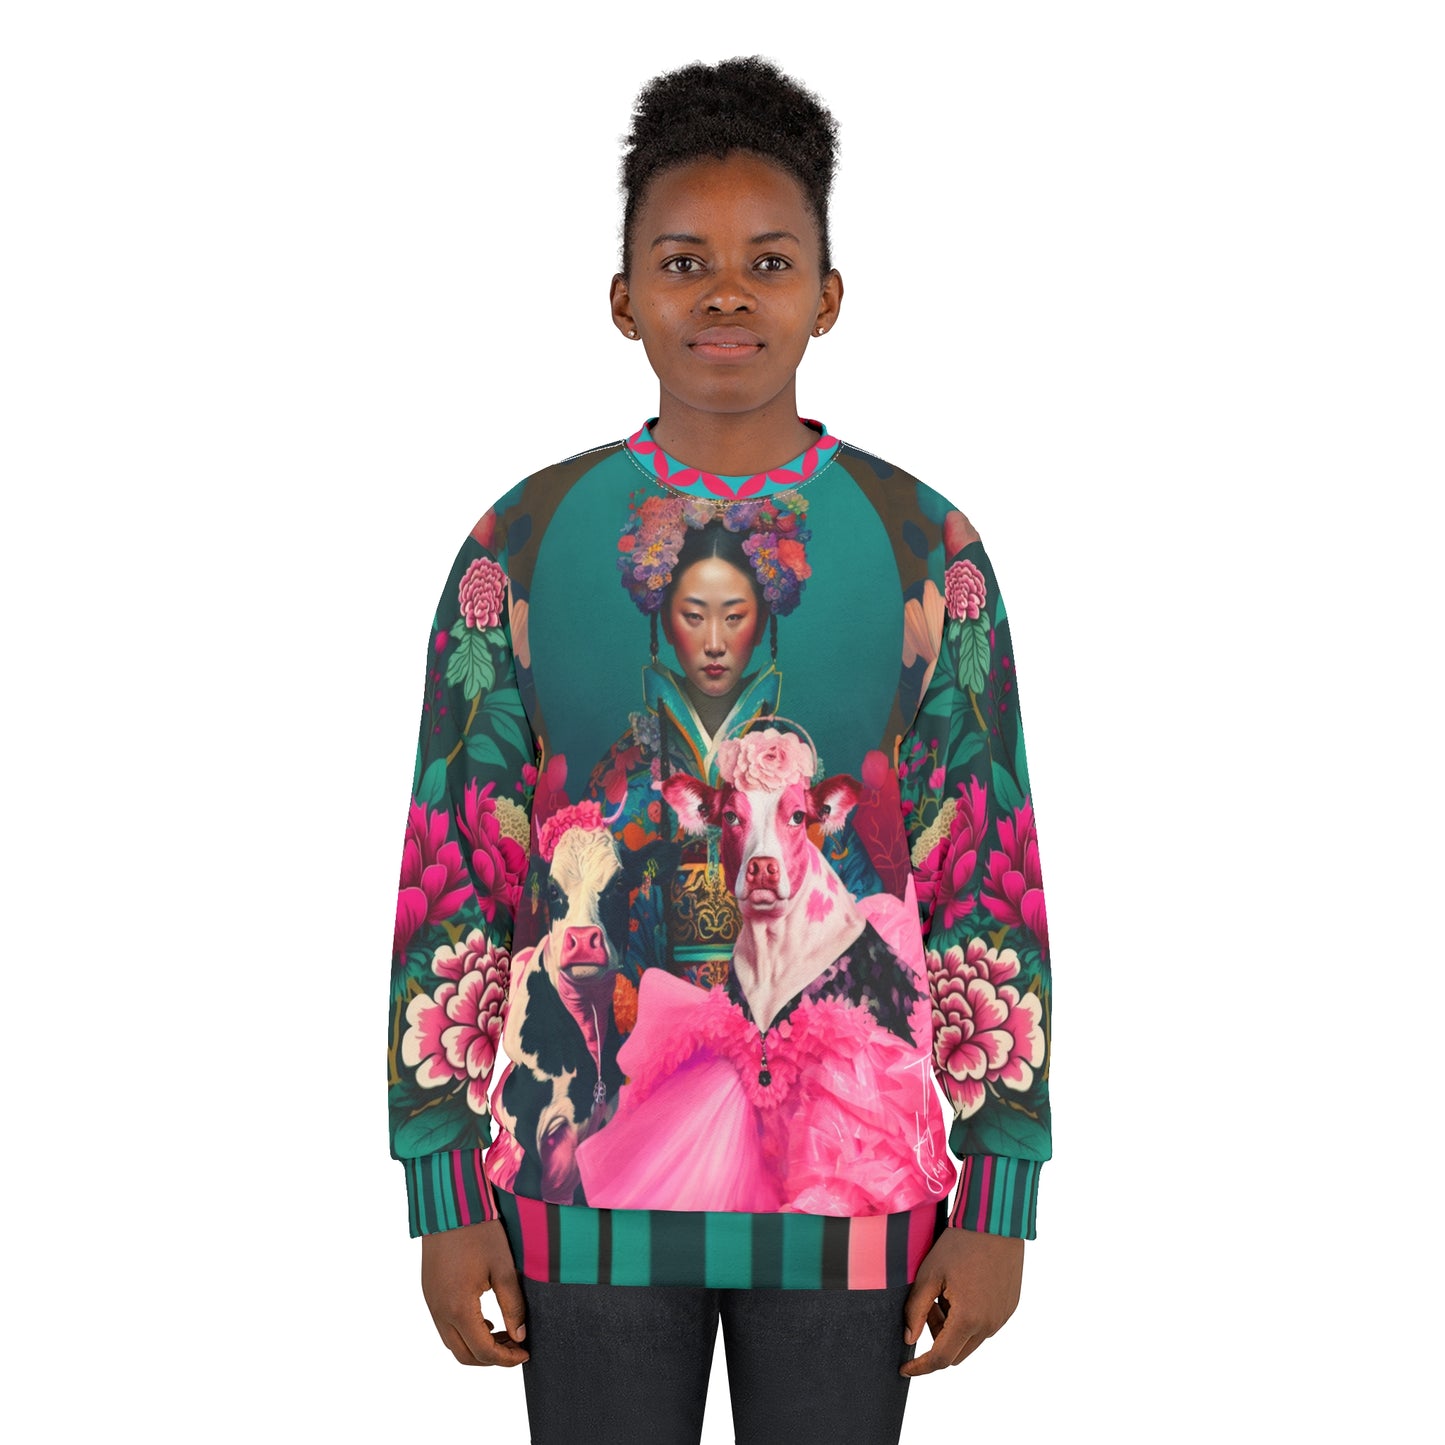 The Pouty Princesses Pop Art Unisex Sweatshirt